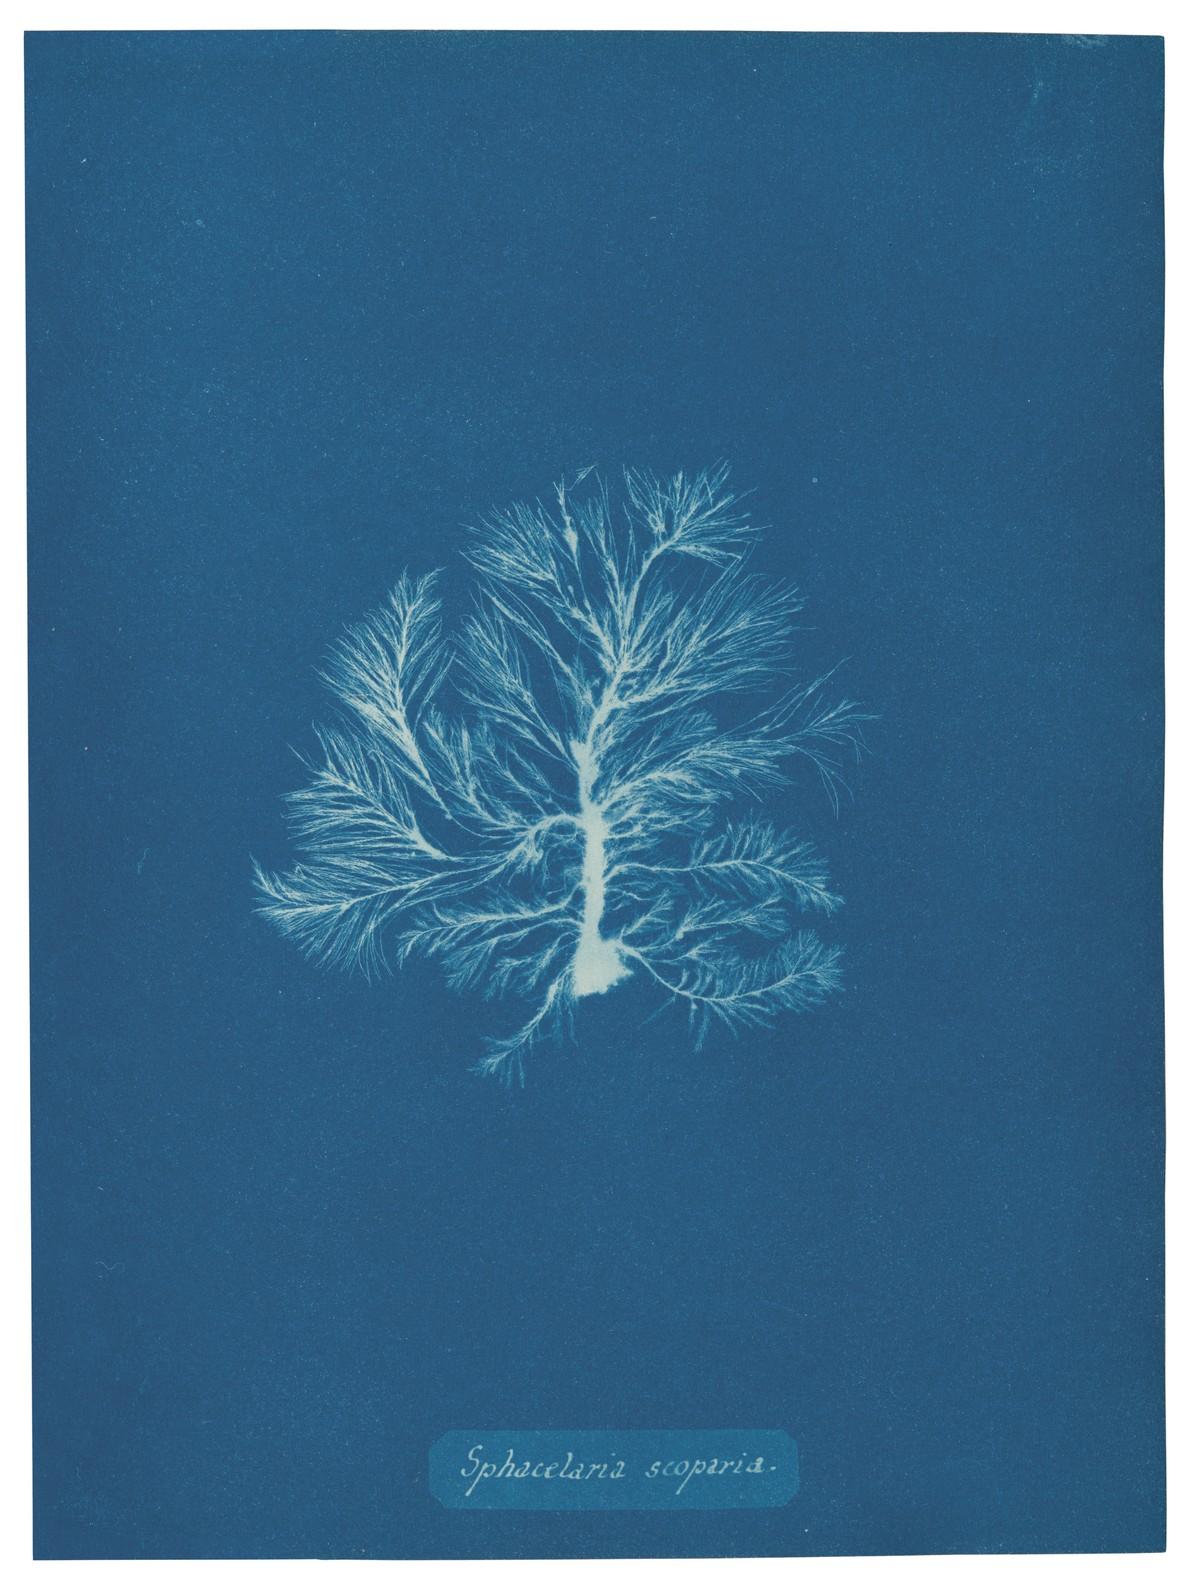 Die unnachahmlichen Cyanotypie-Fotogramme von Algen und Farnen, die Atkins anfertigte, bilden die ersten Bücher mit Fotografien. | Foto: TASCHEN / The Metropolitan Museum of Art, New York